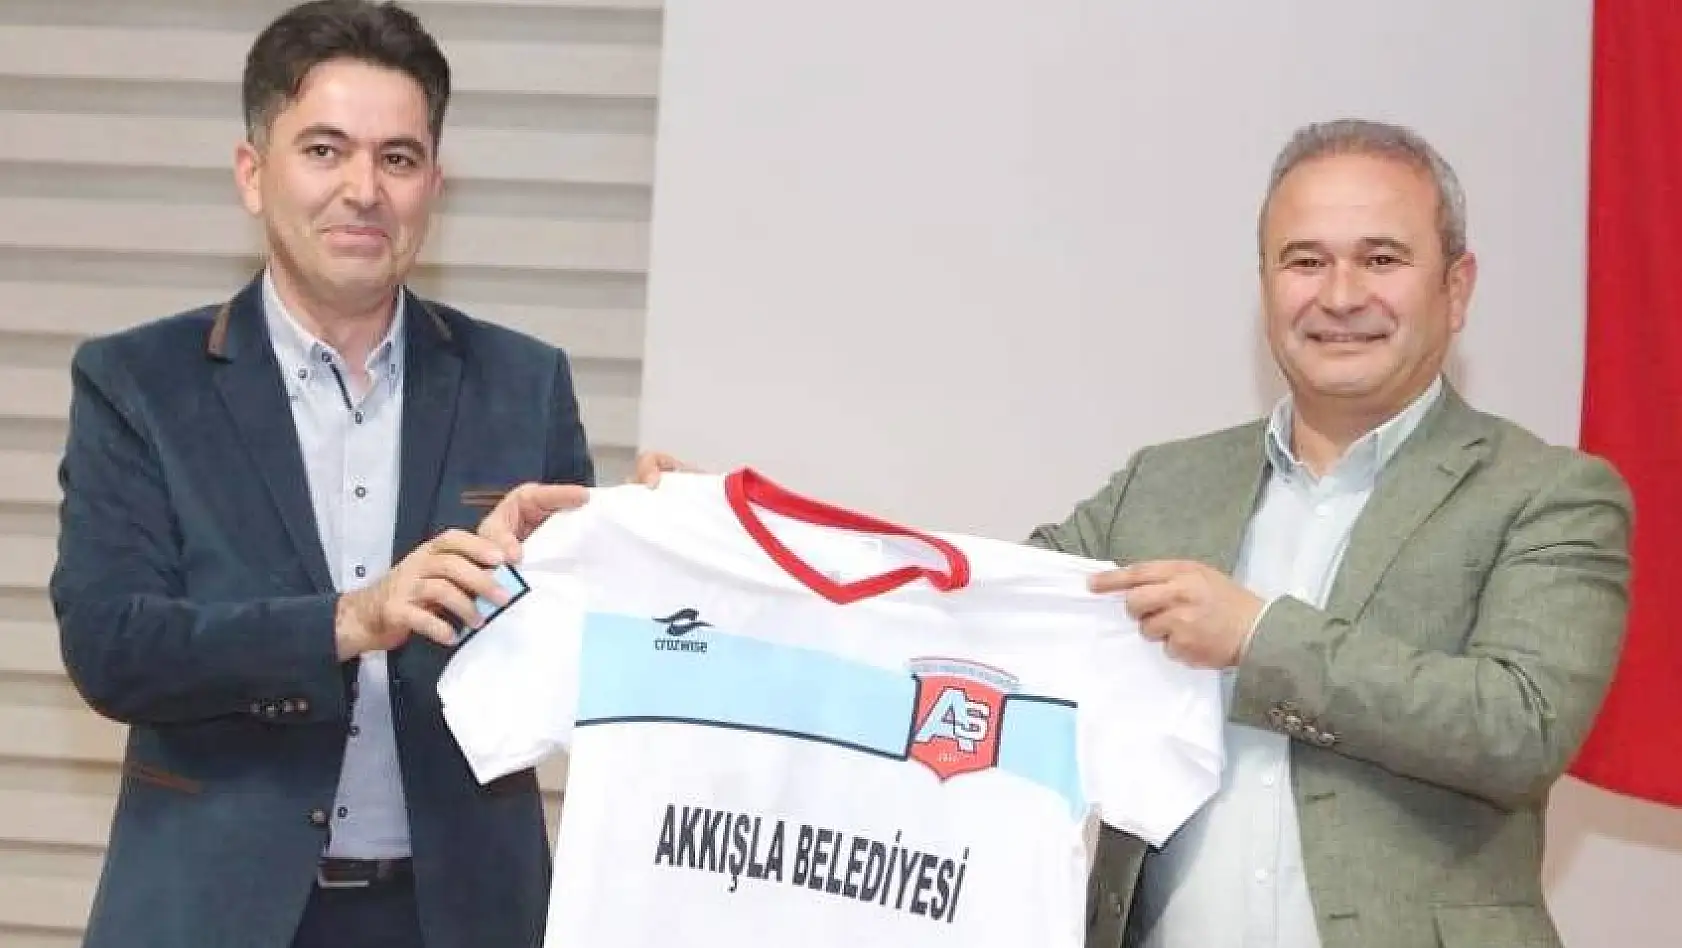 Akkışla Gençlikspor'dan sezon açılış tanıtım toplantısı